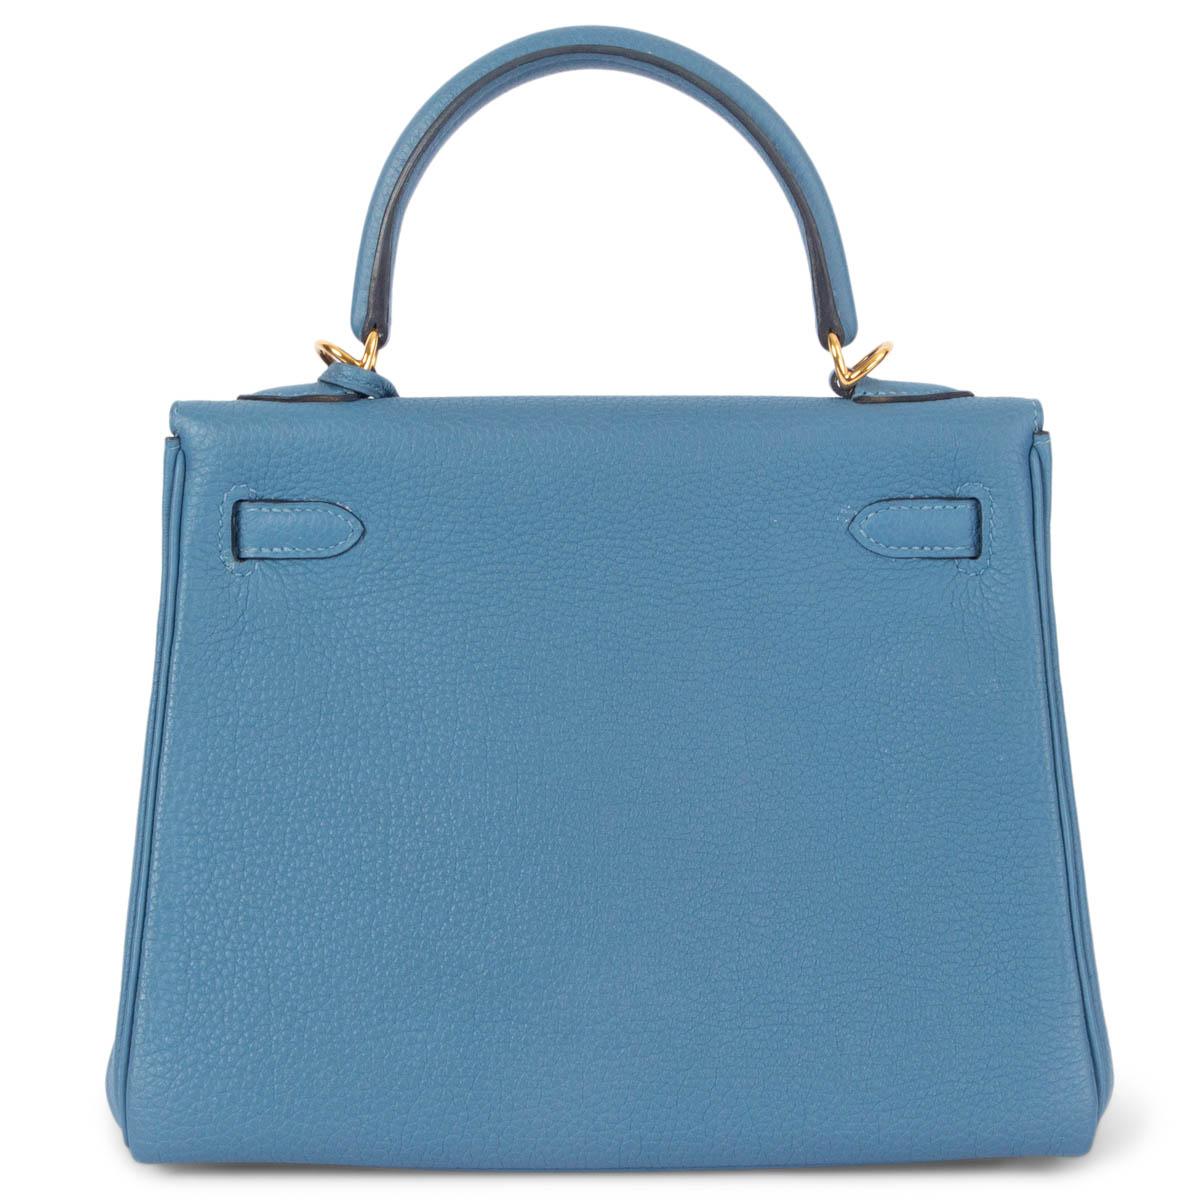 Blue HERMES Azur blue Togo leather KELLY 25 RETOURNE Bag w Gold For Sale